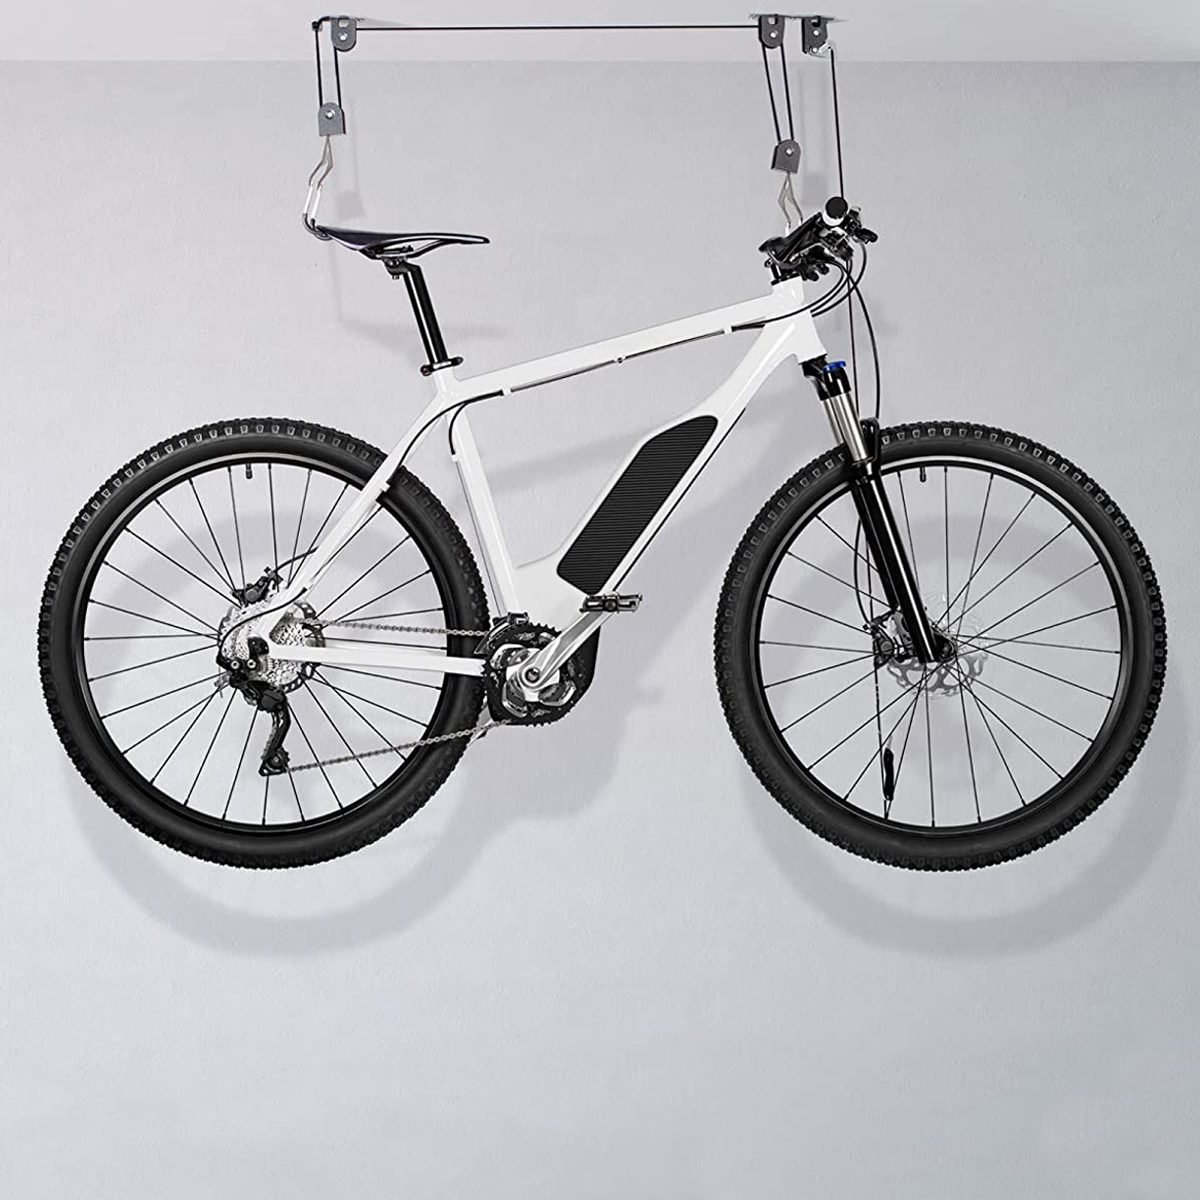 Bike Hoist For Garage With Utility Hooks Lift Storage Ecomm Amazon.com